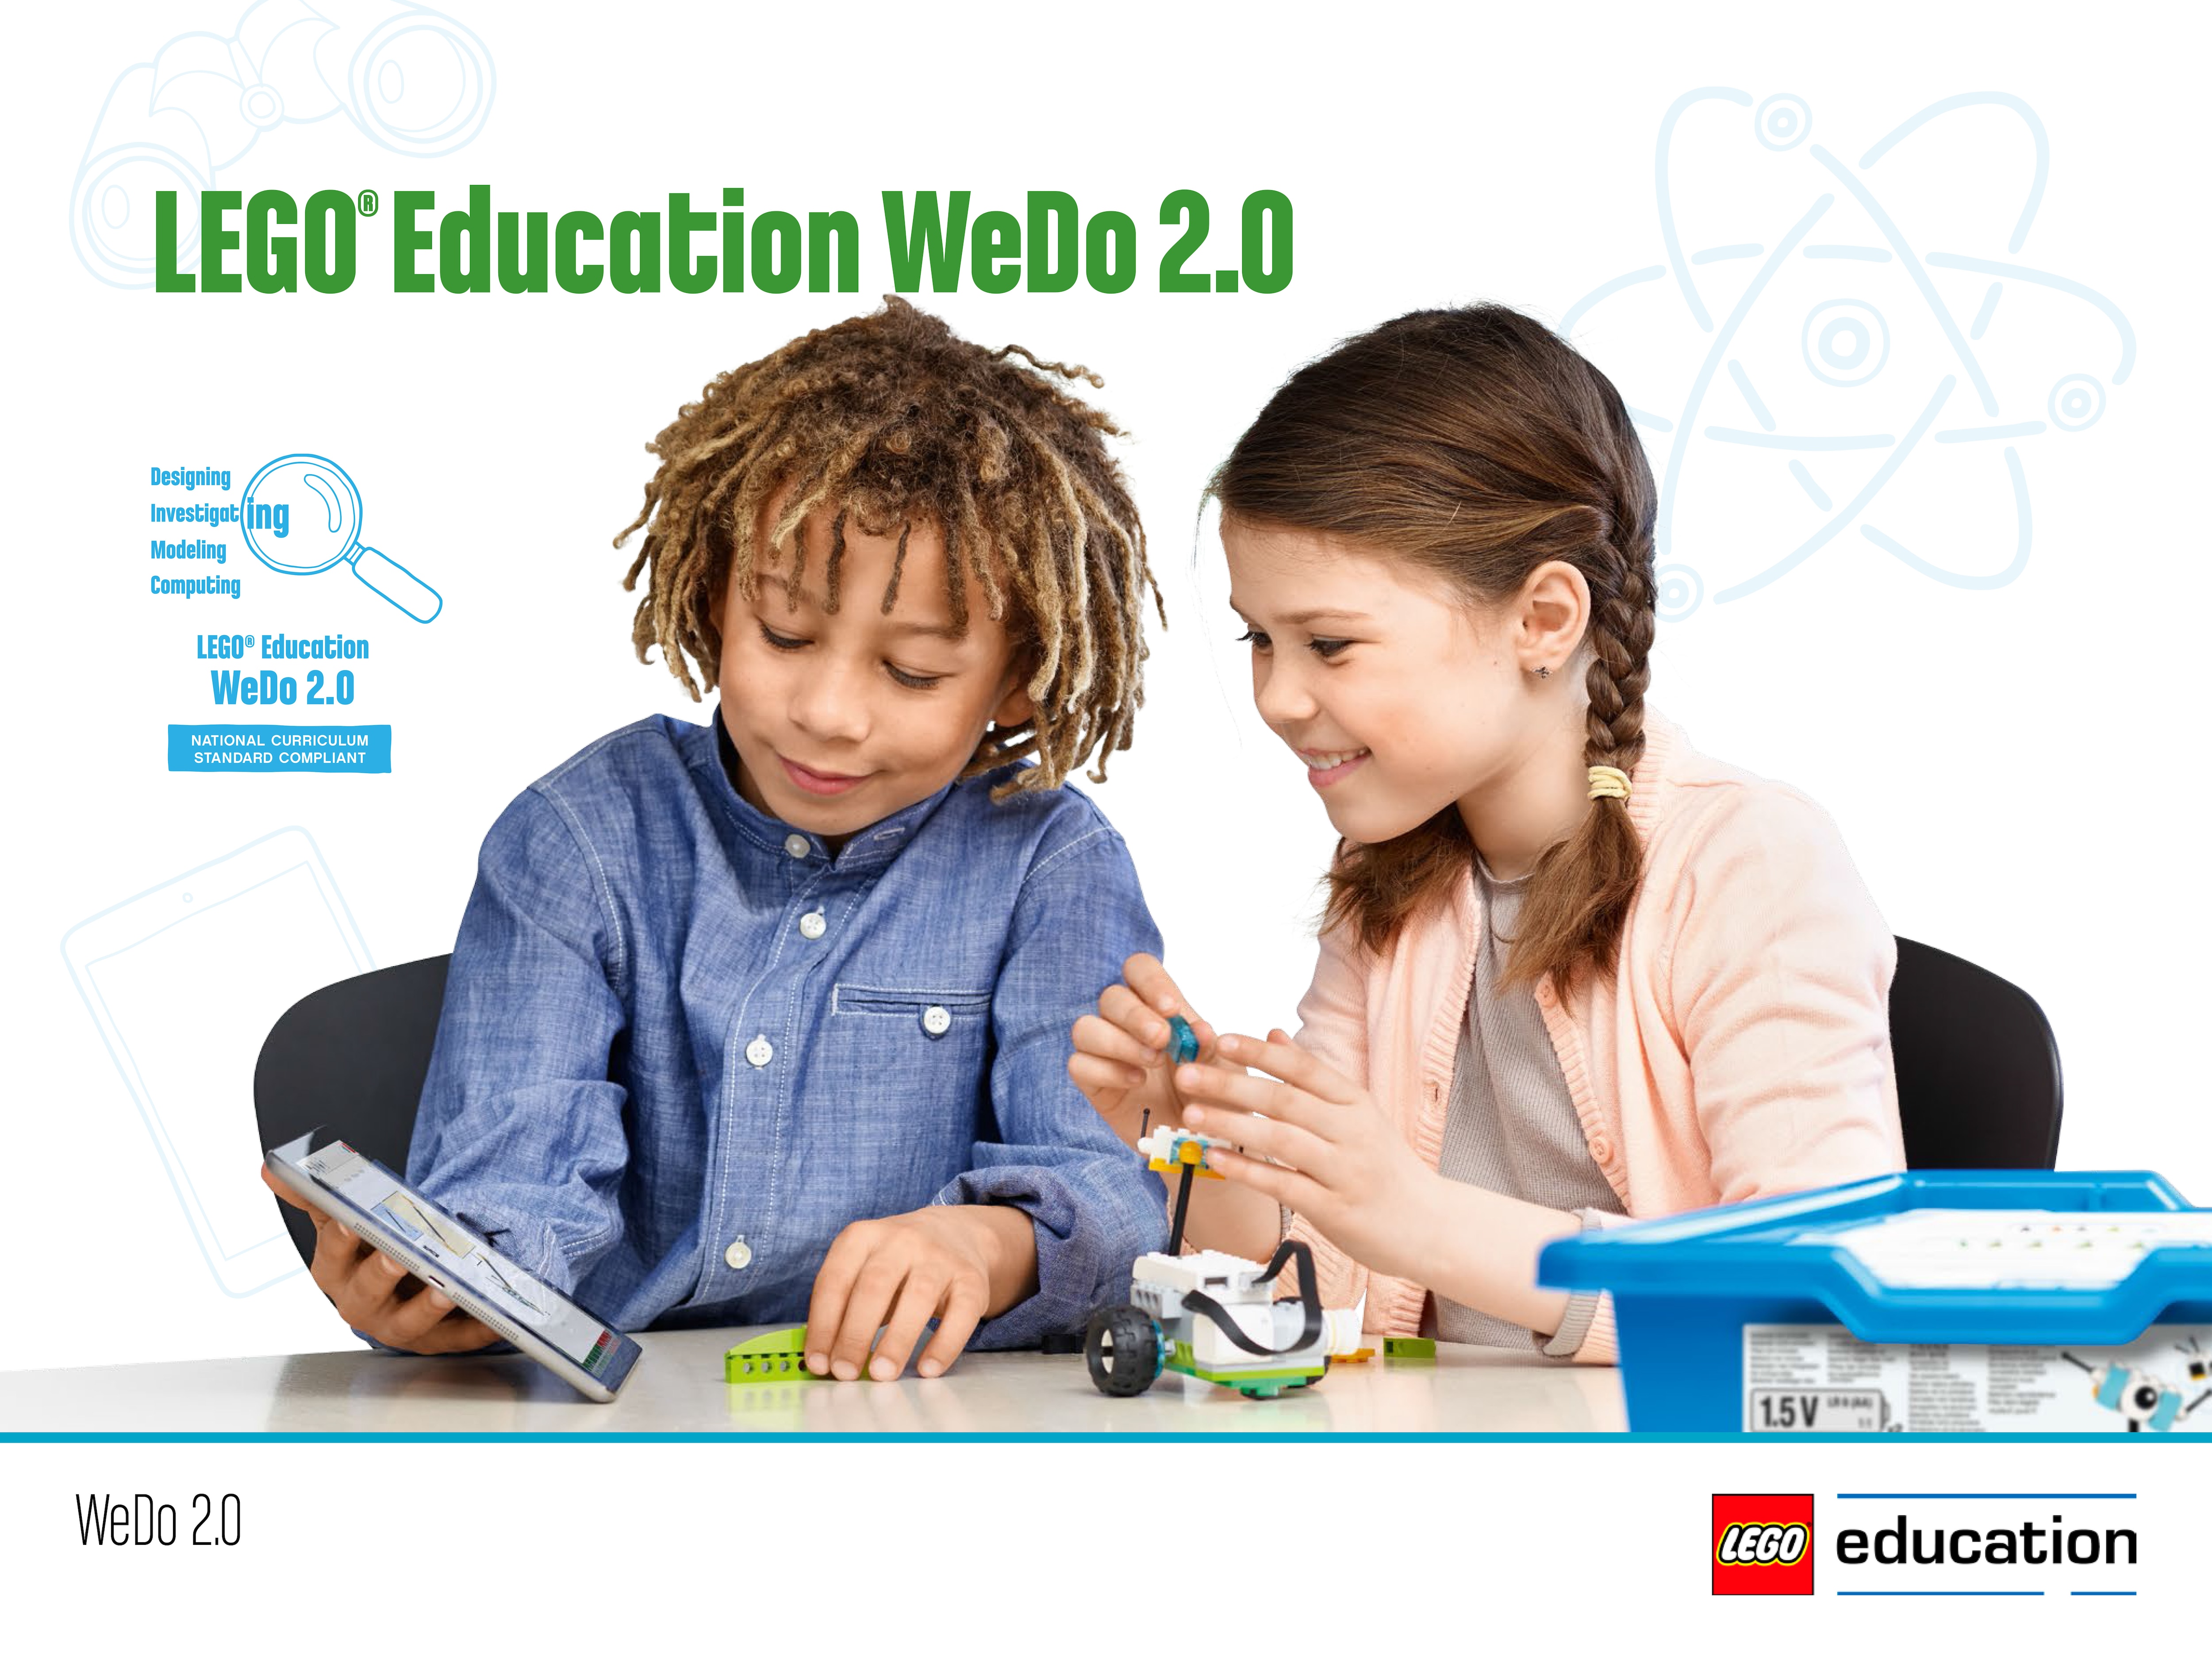 lego 2.0 education